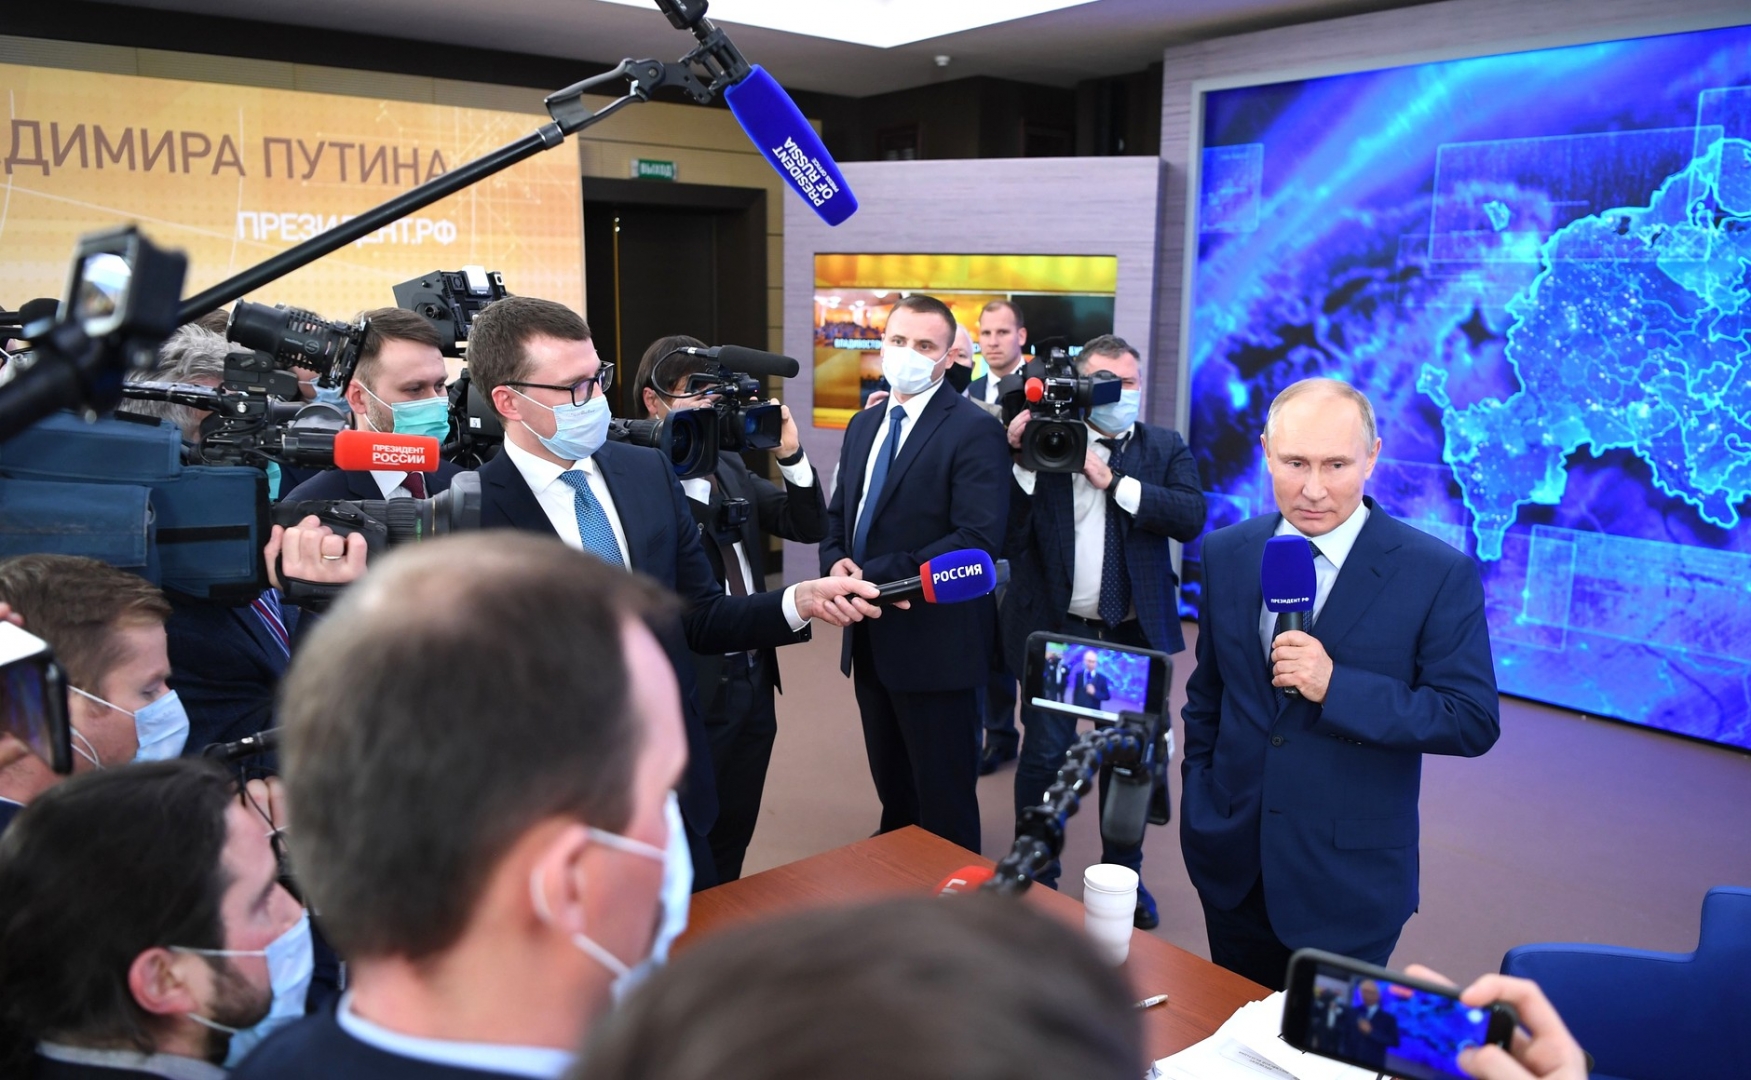 Ни грамма популизма: названы плюсы и минусы пресс-конференции Путина